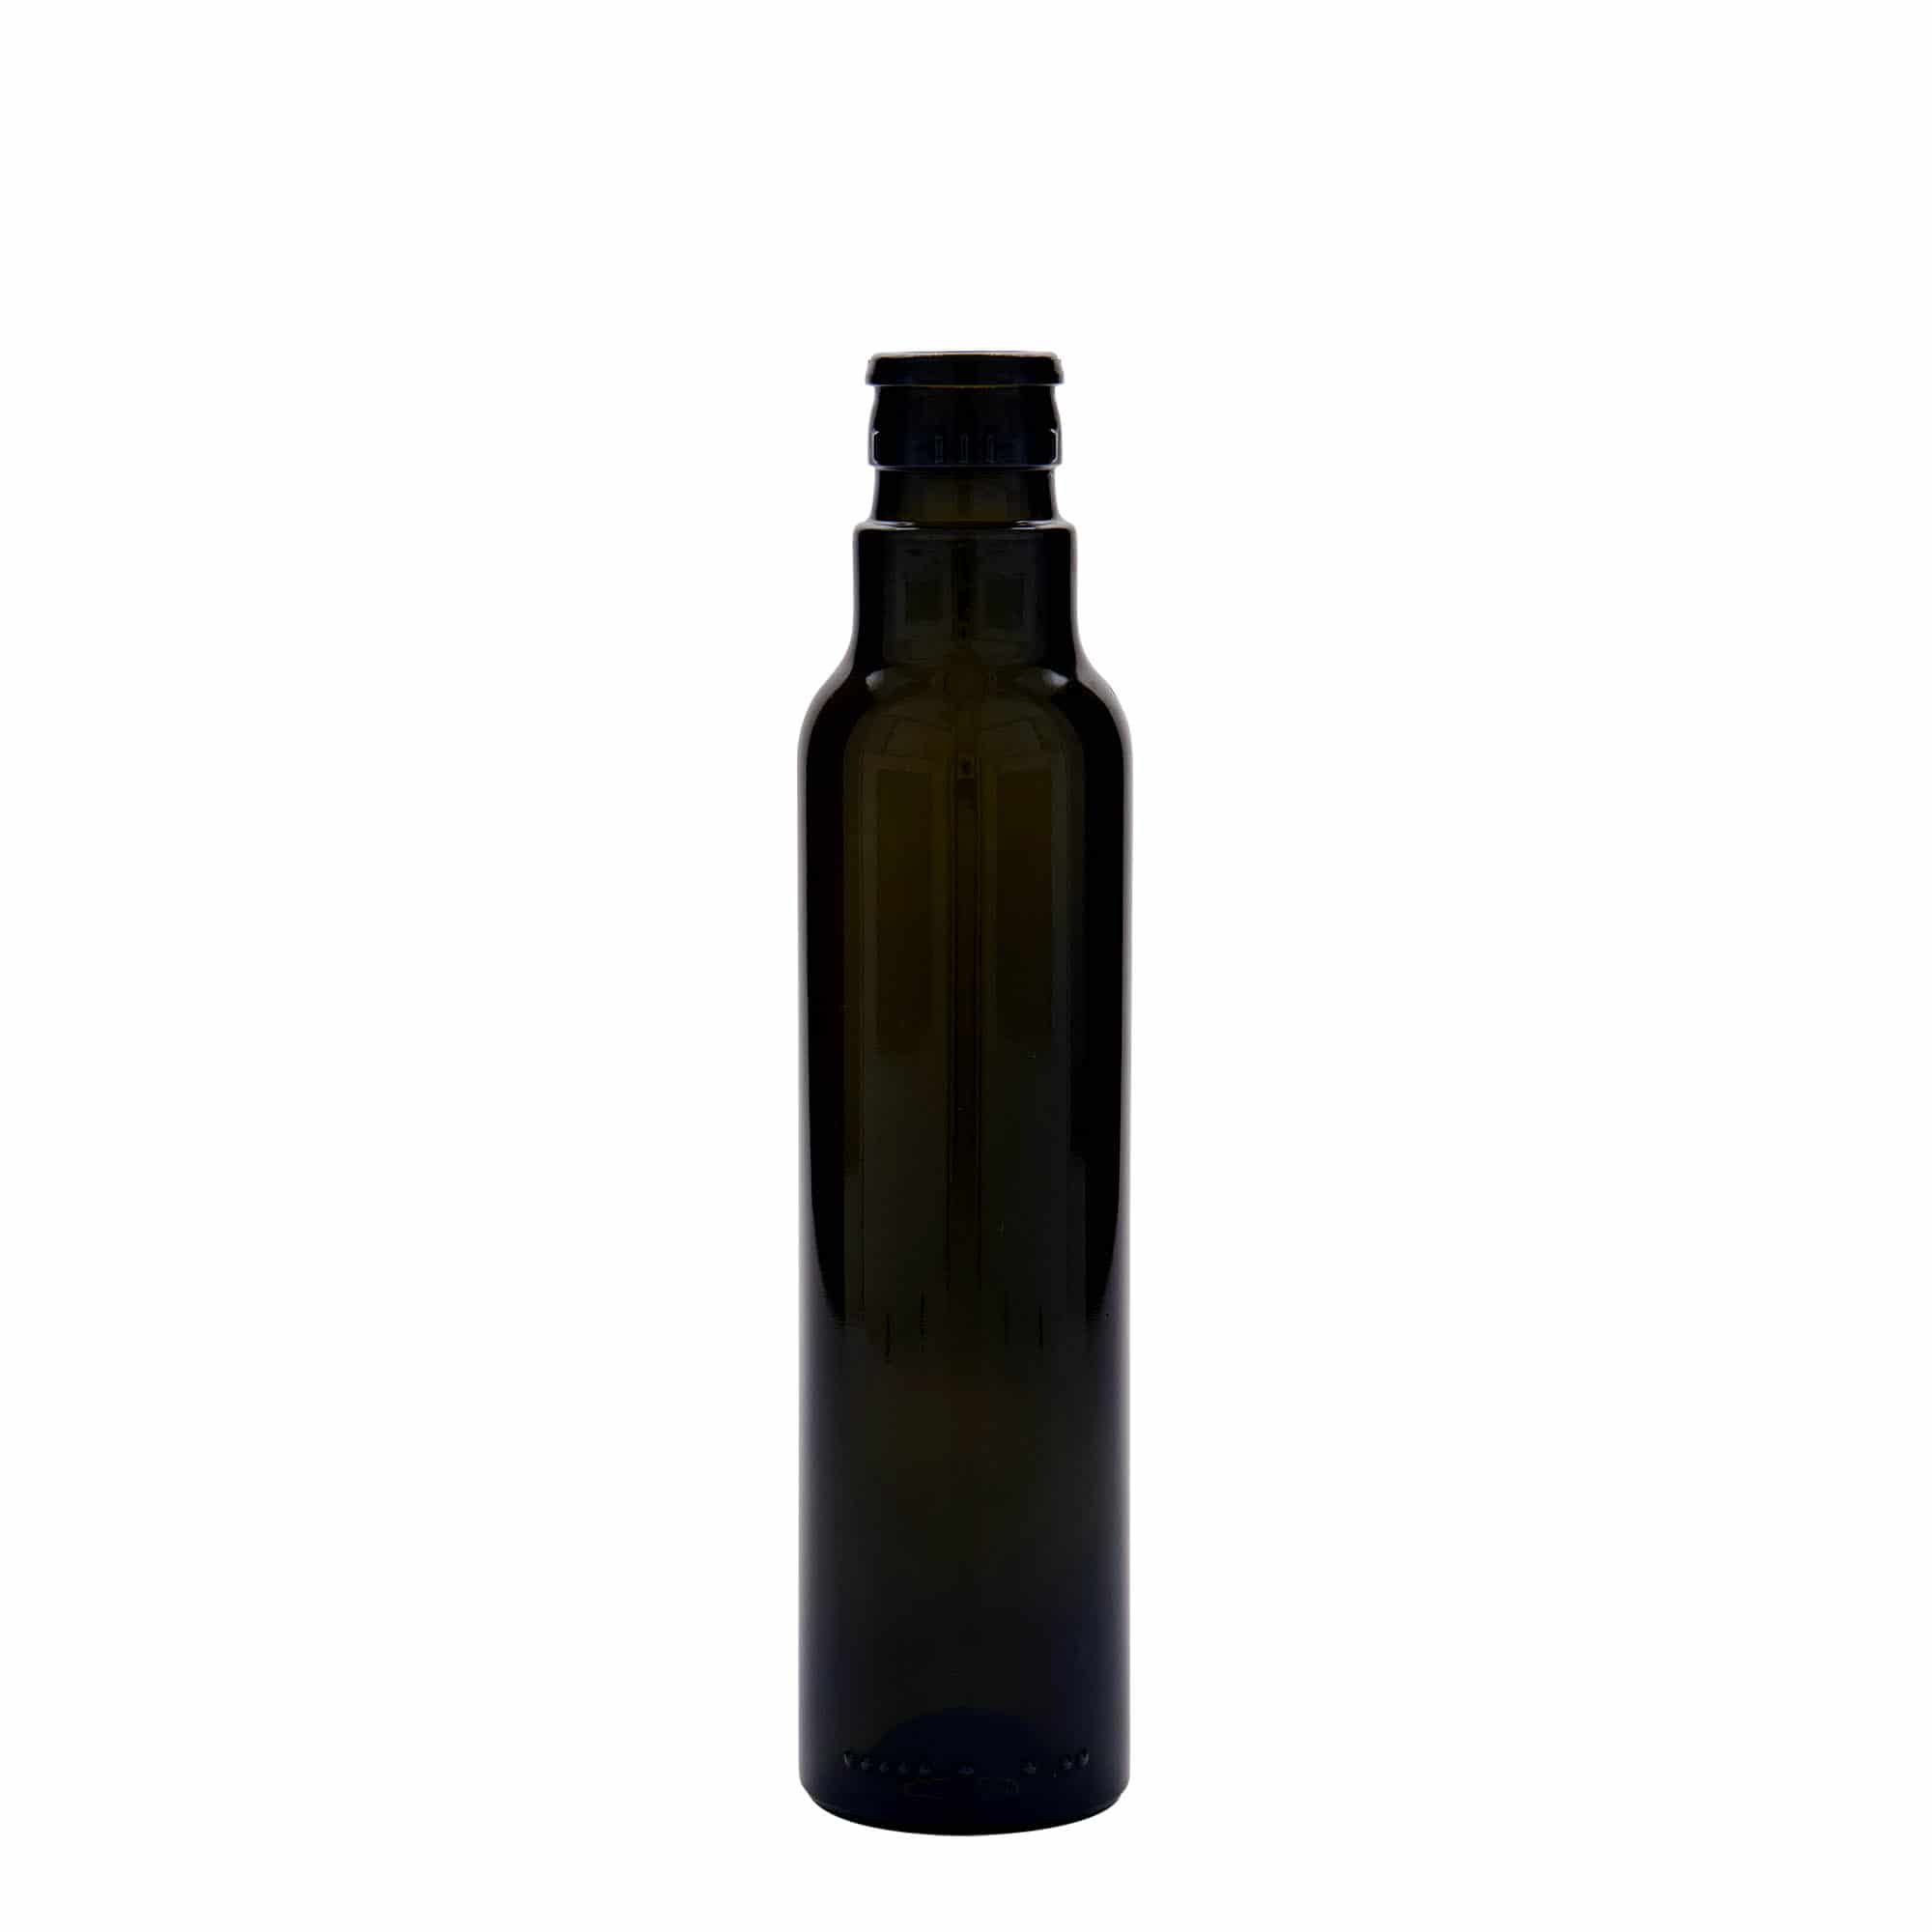 250 ml butelka na ocet/olej 'Willy New', szkło, kolor zielony antyczny, zamknięcie: DOP